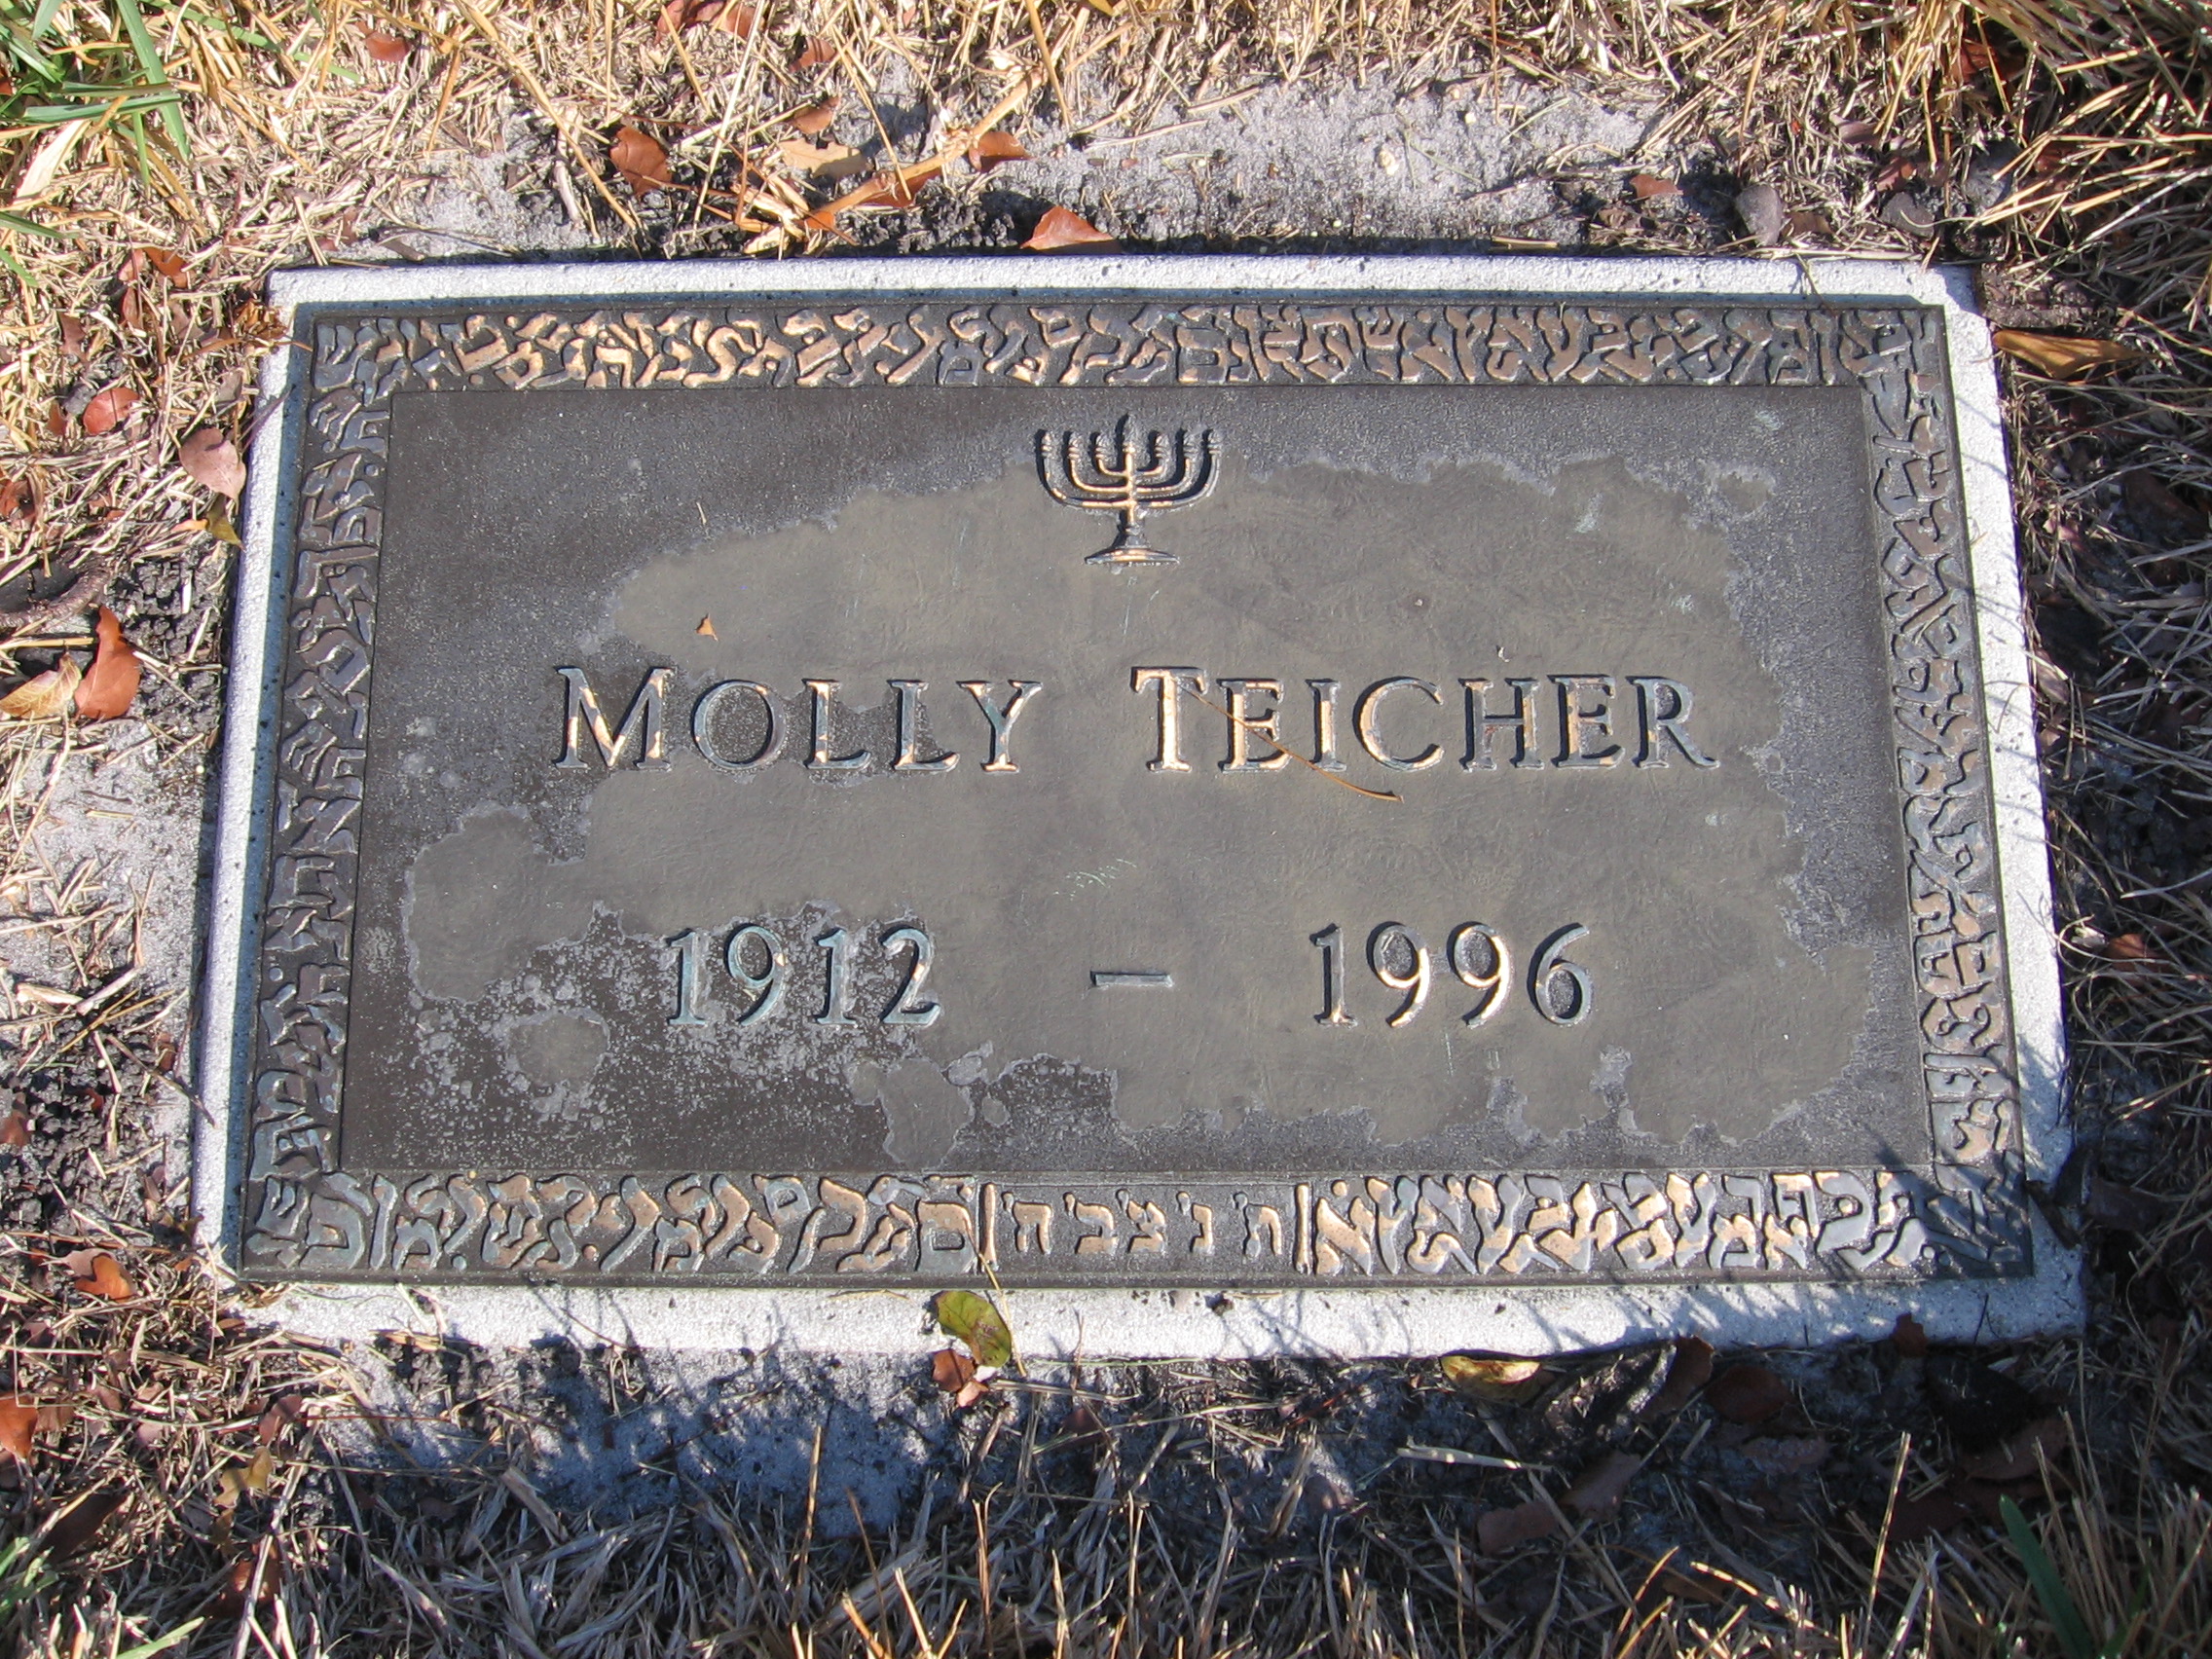 Molly Teicher